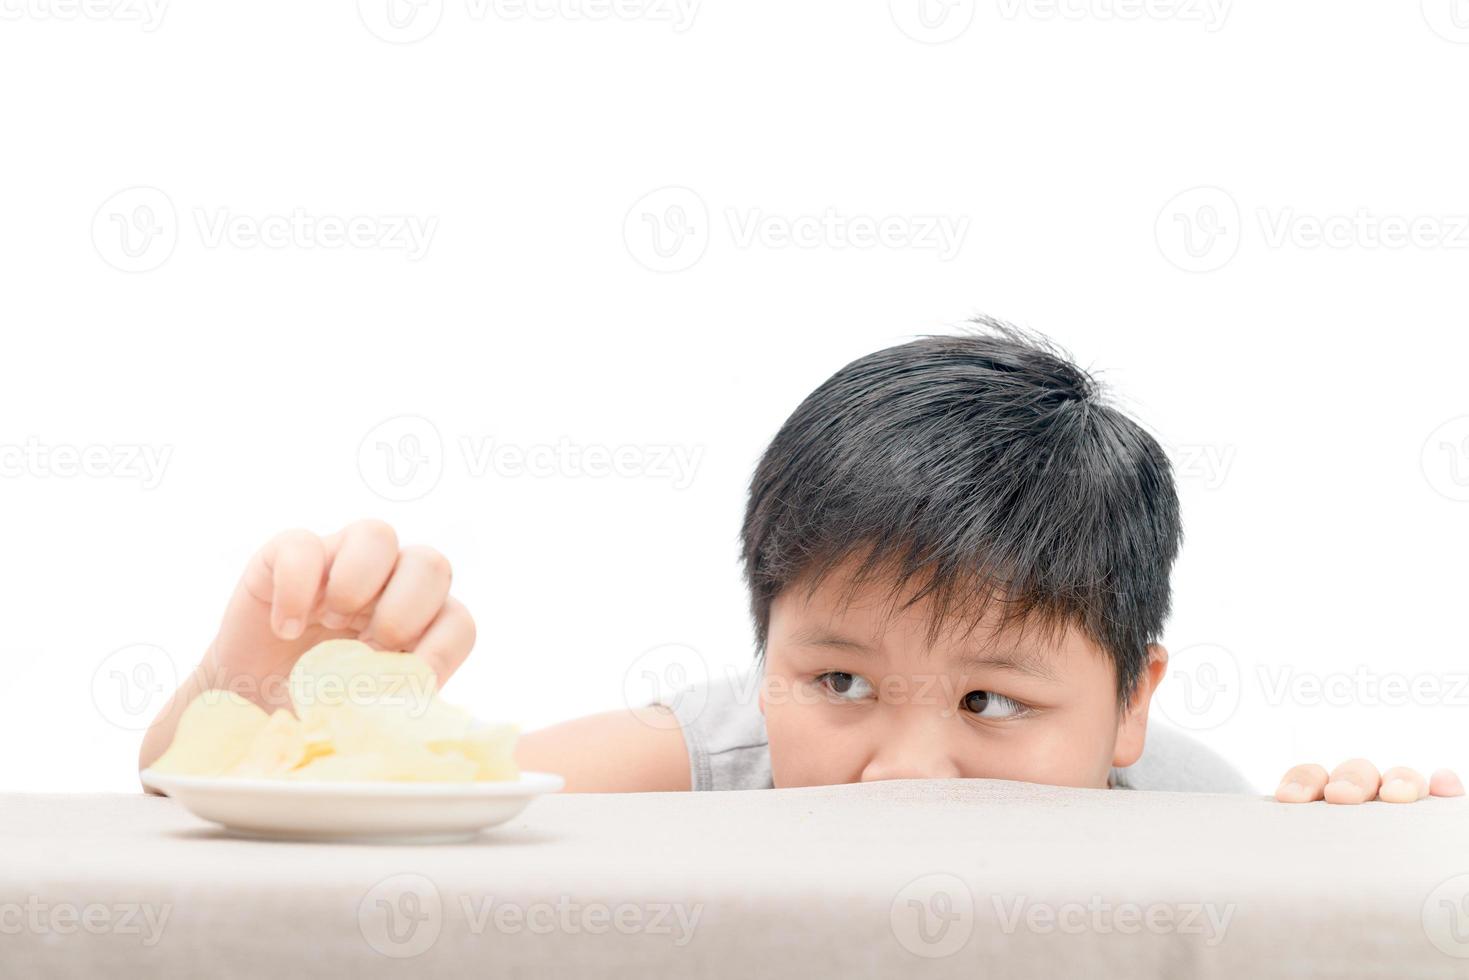 obeso grasa chico es alcanzando patata patatas fritas en mesa foto